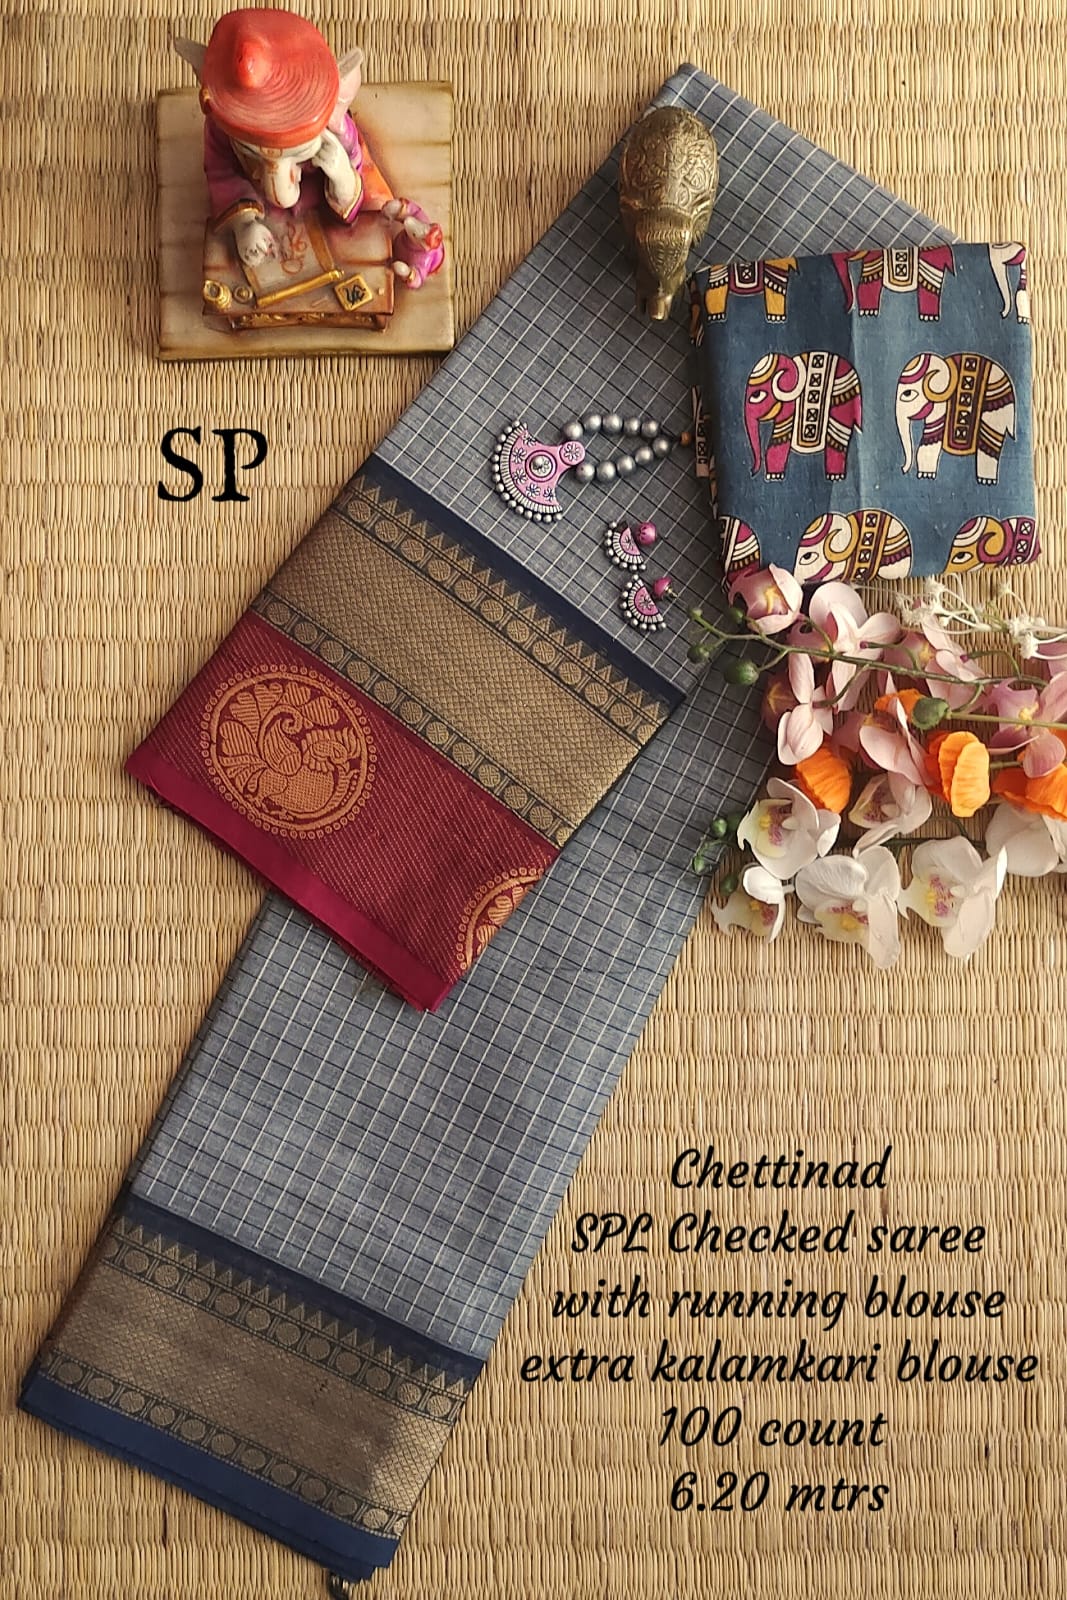 Chettinad cotton 100 count checked saree